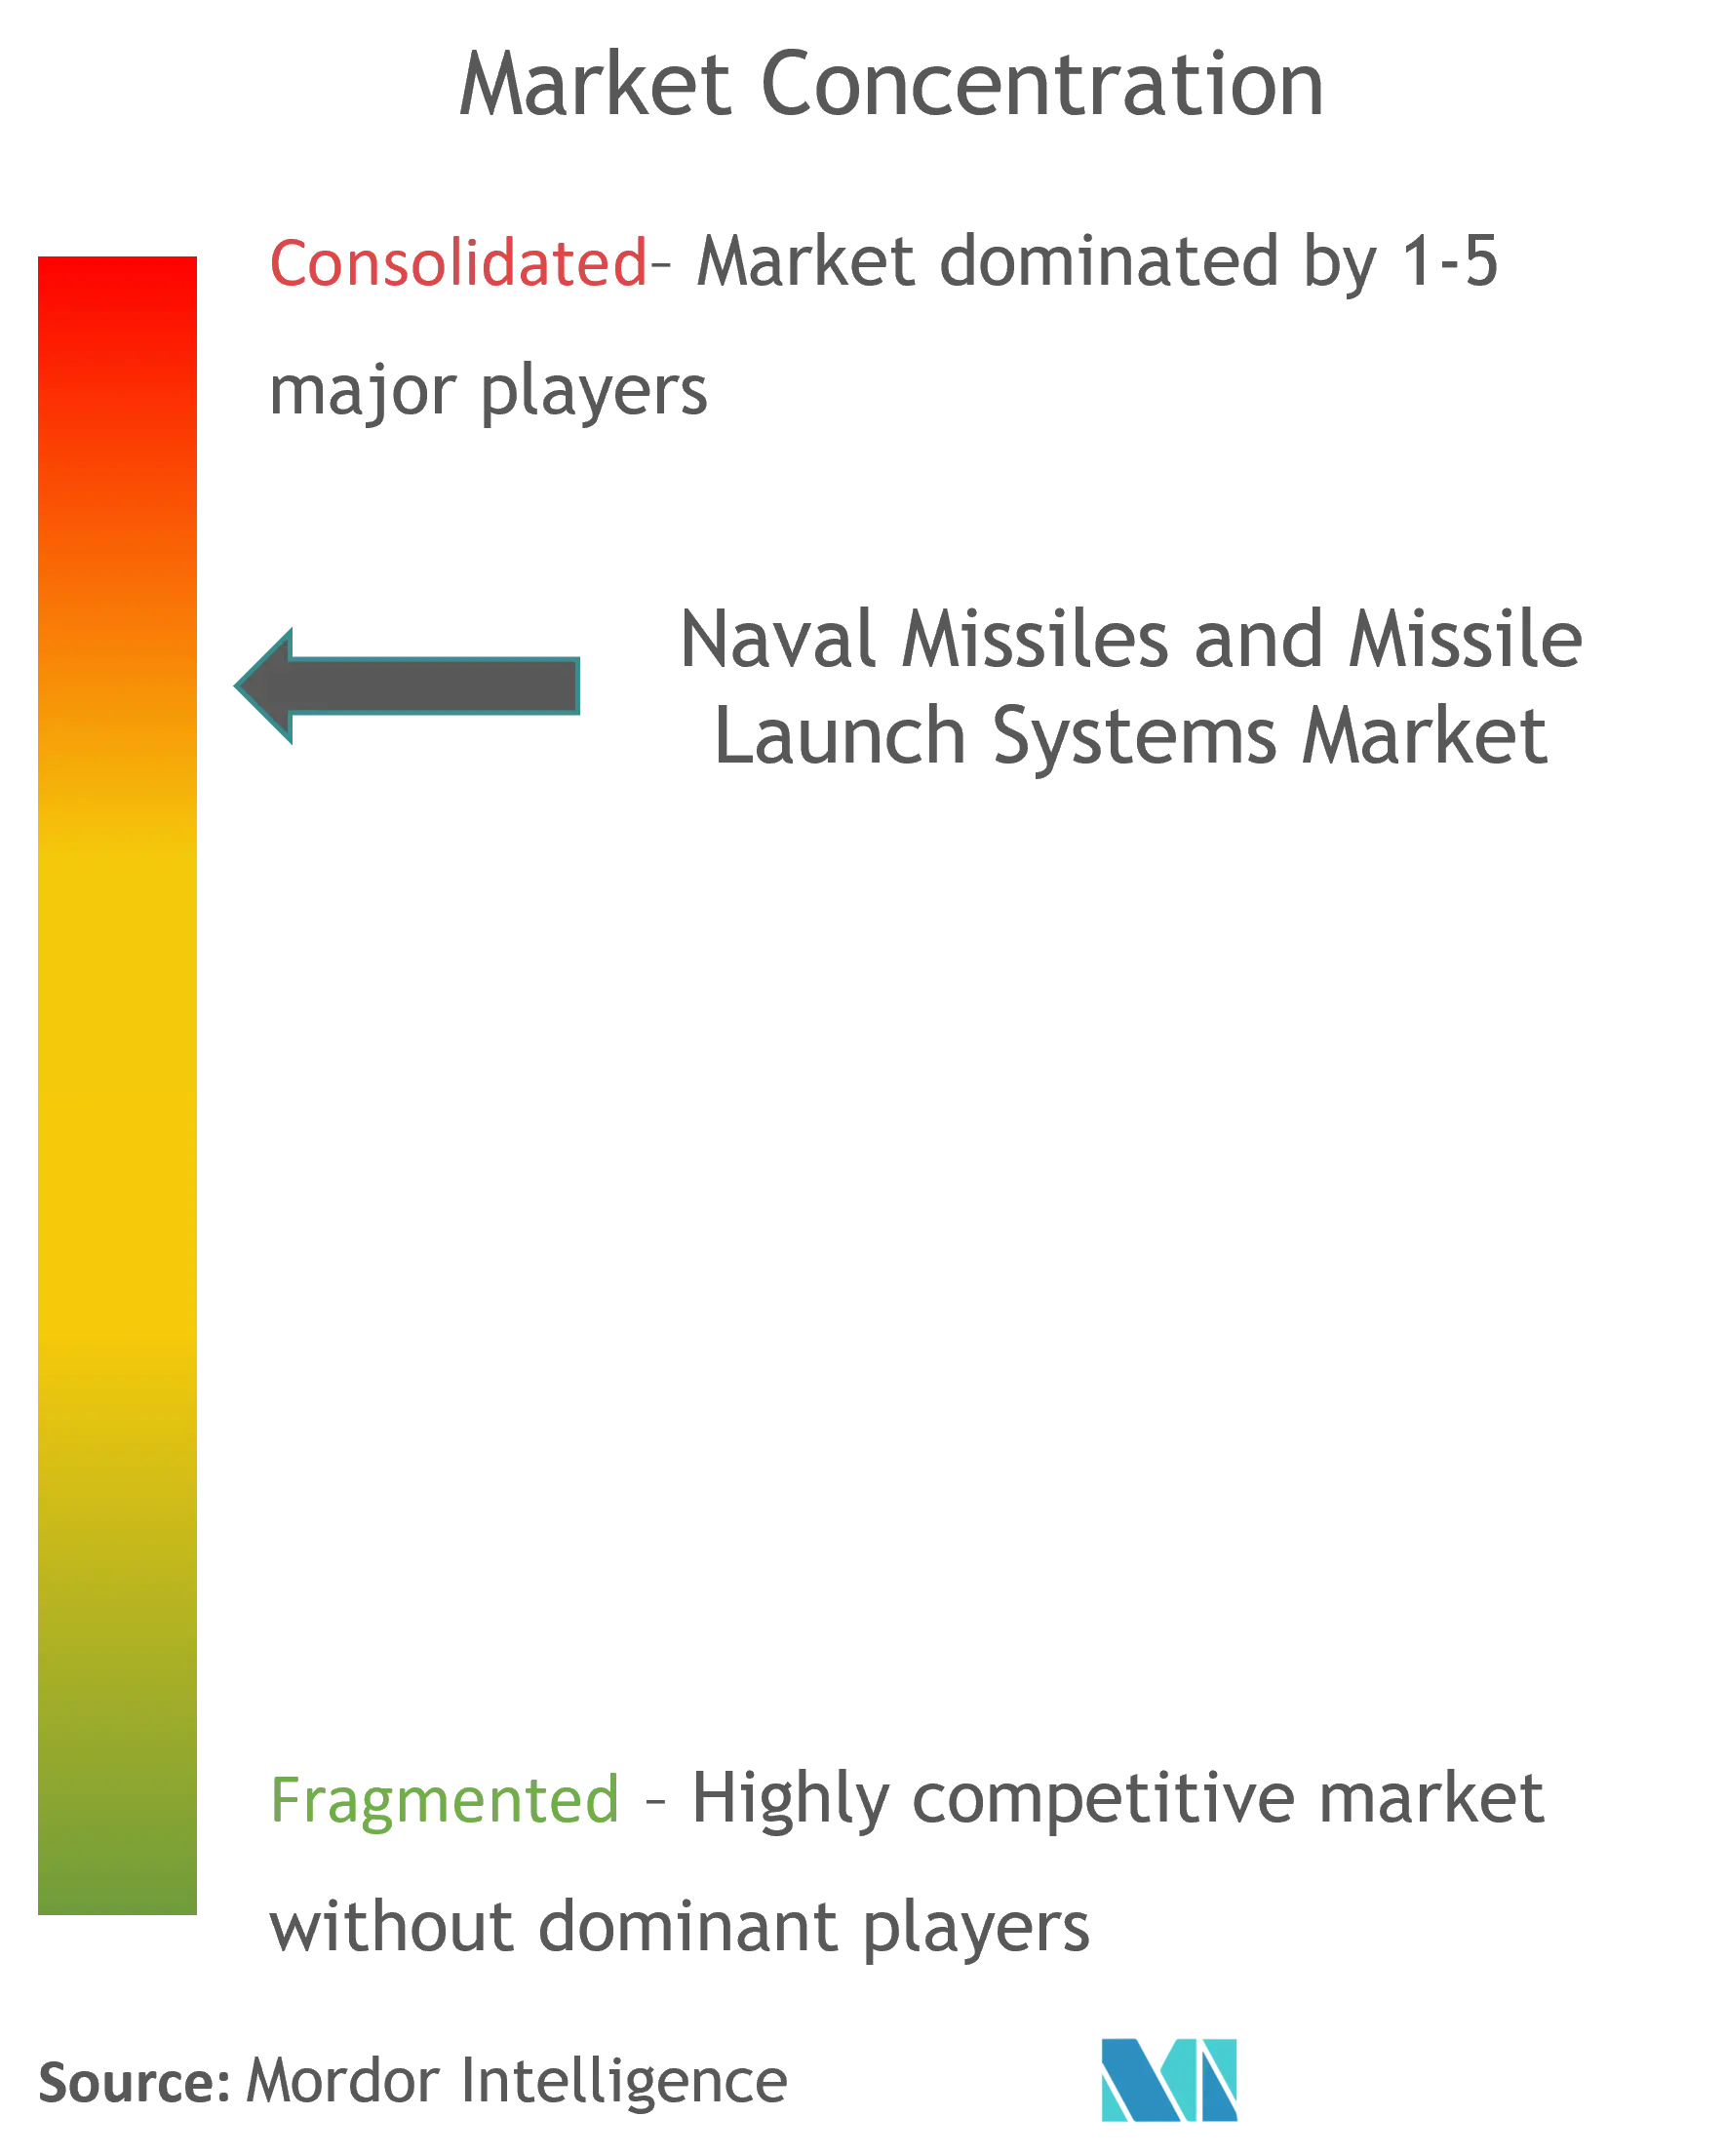 海军导弹和导弹发射系统市场 CL update.png